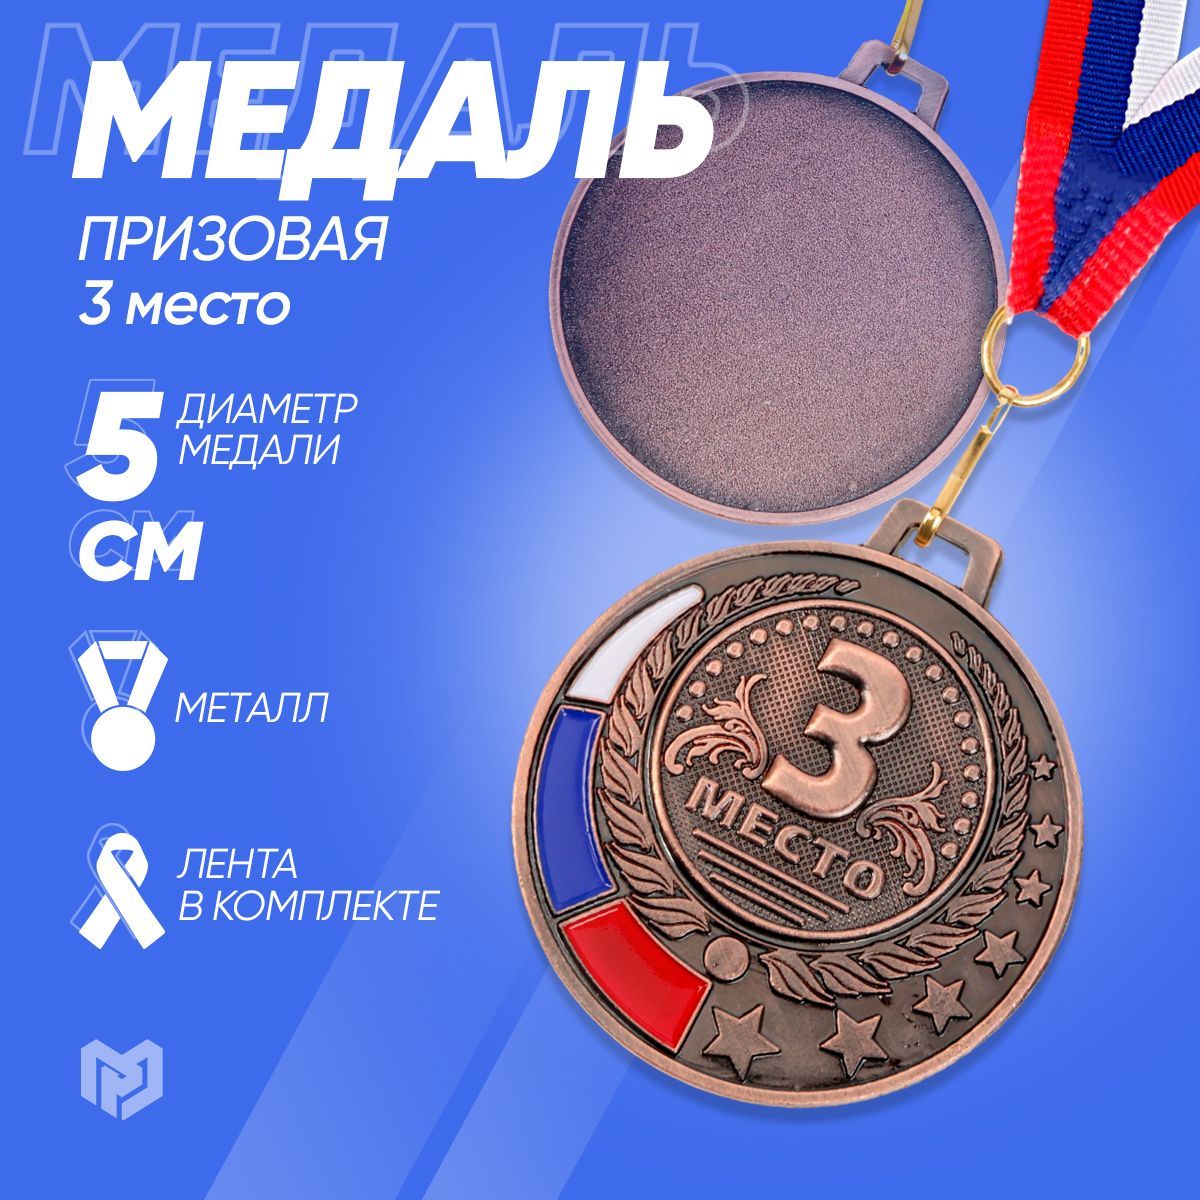 Medal отзывы. Фигурные медали.